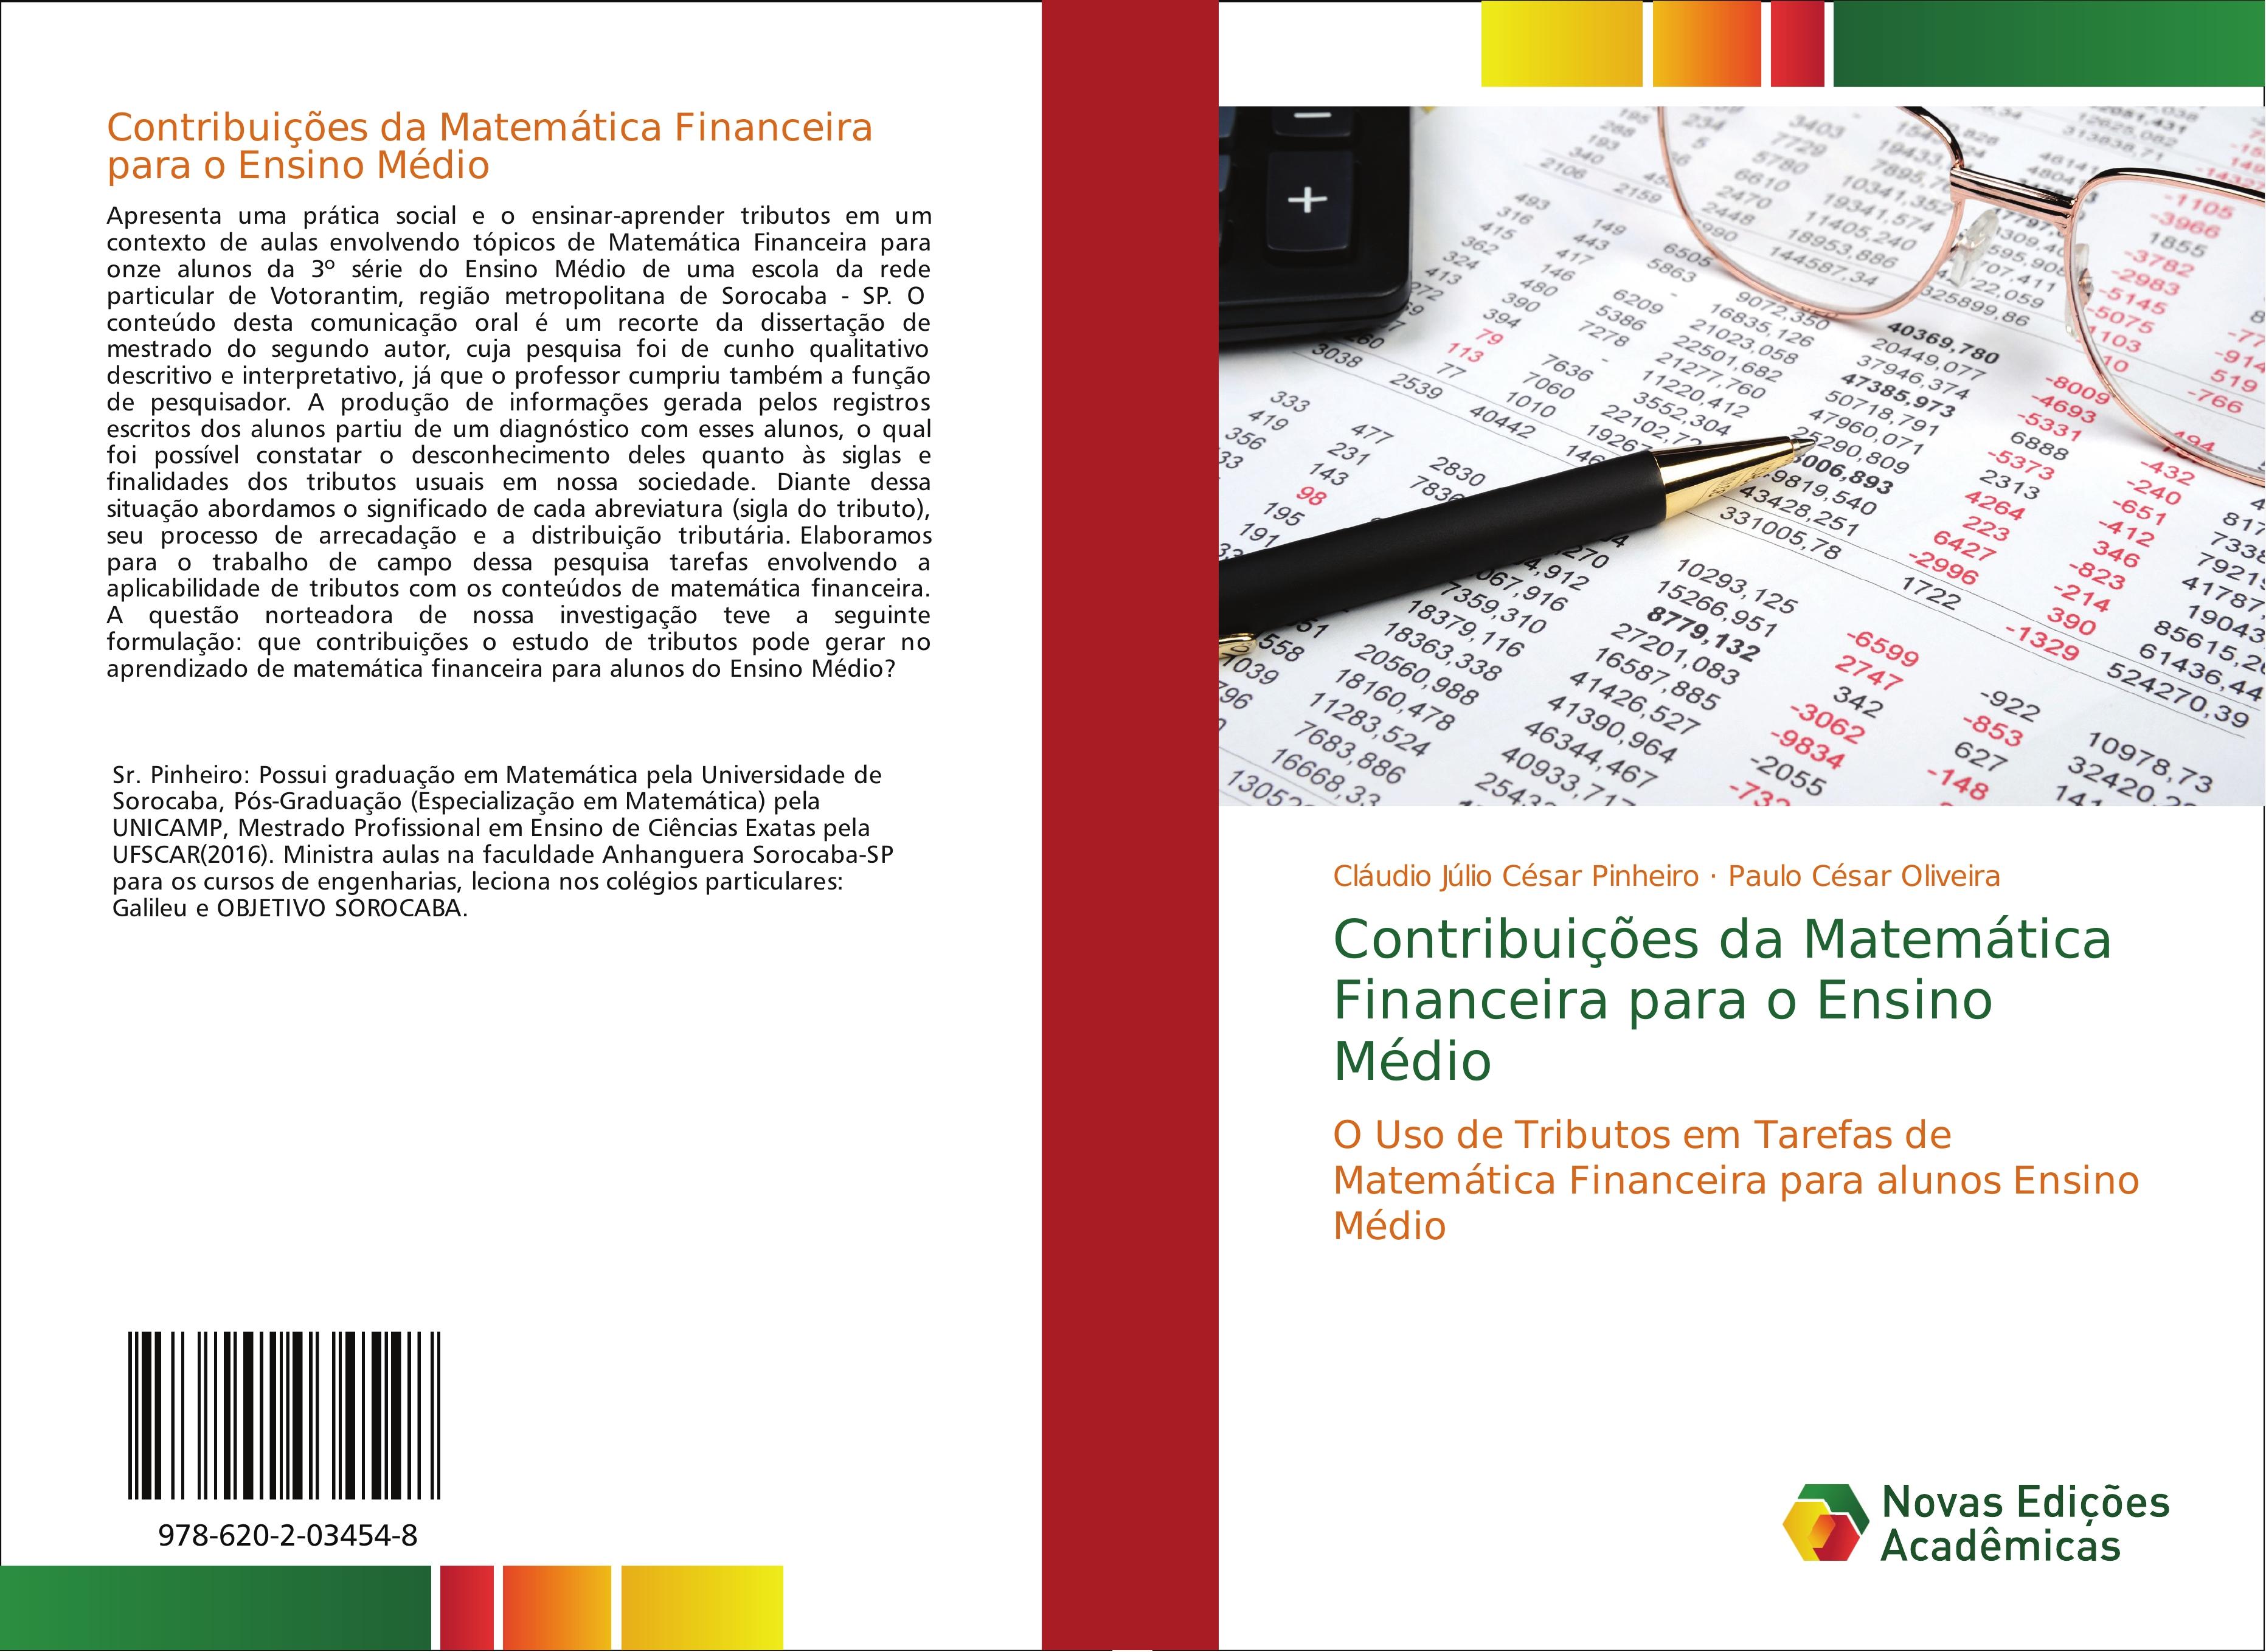 Contribuições da Matemática Financeira para o Ensino Médio - Cláudio Júlio César Pinheiro Paulo César Oliveira